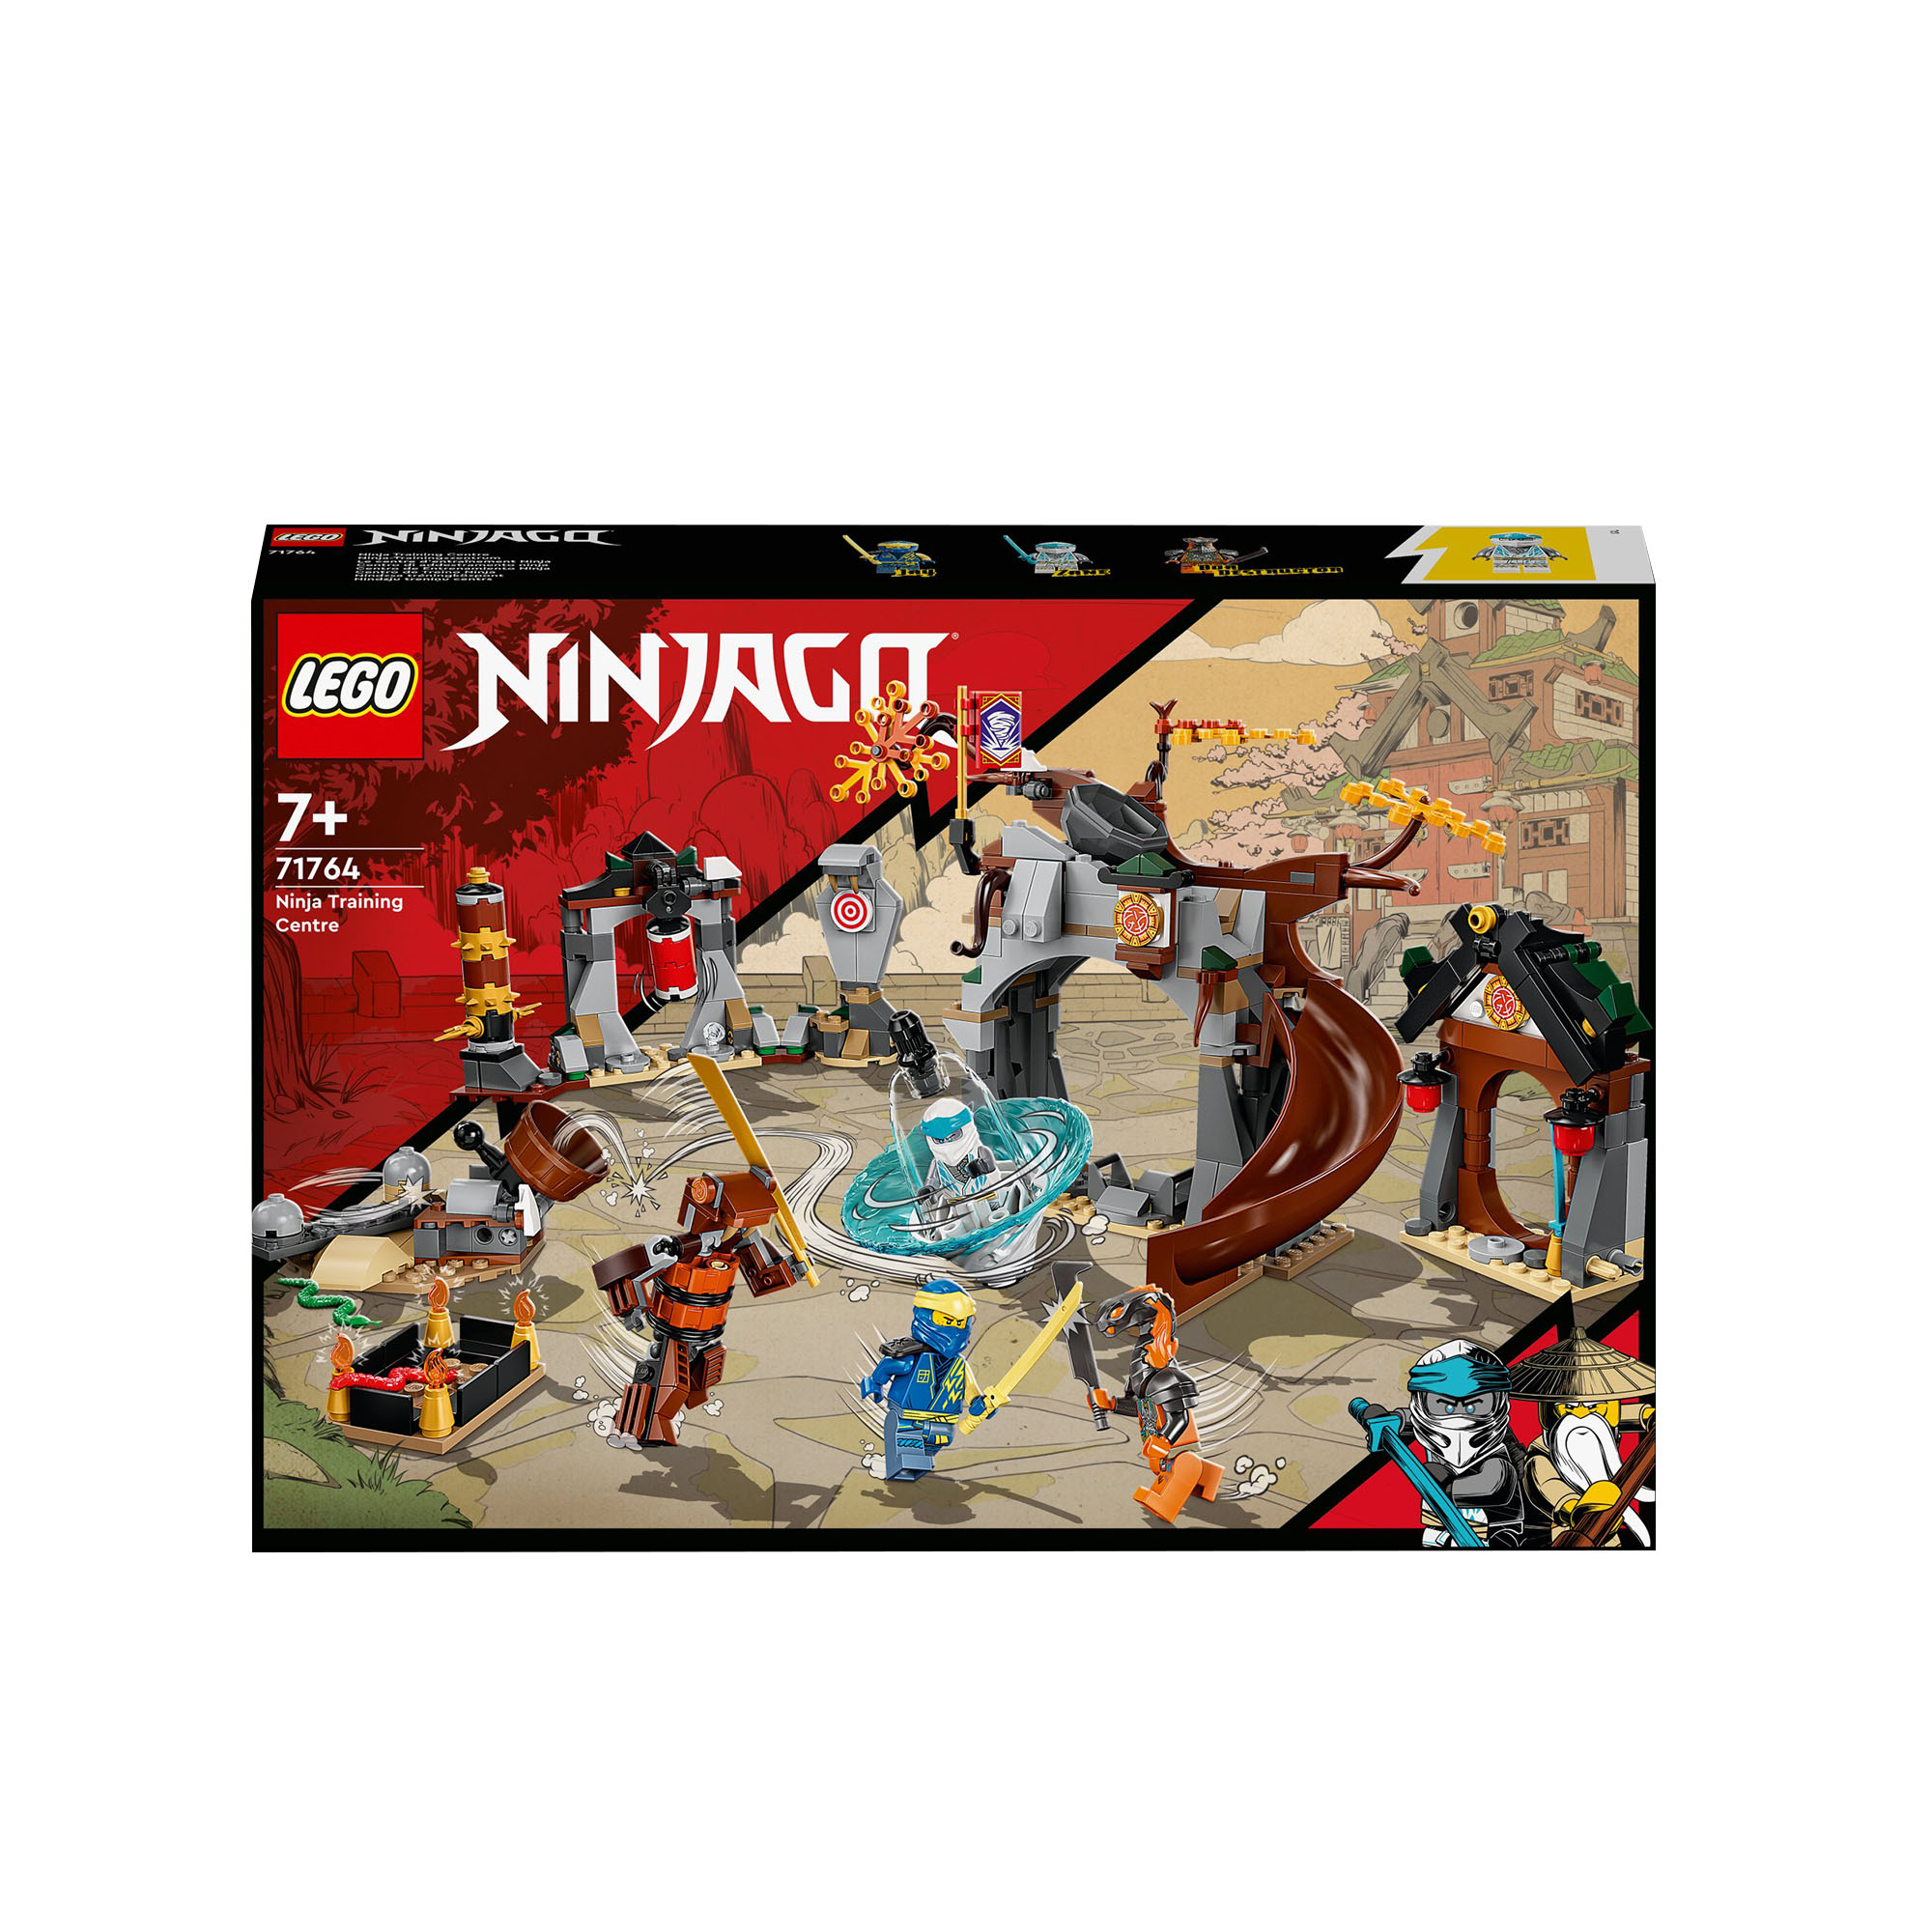 LEGO 71764 NINJAGO Centro di Addestramento Ninja, Allenamento Piccoli Maestri di 71764, , large